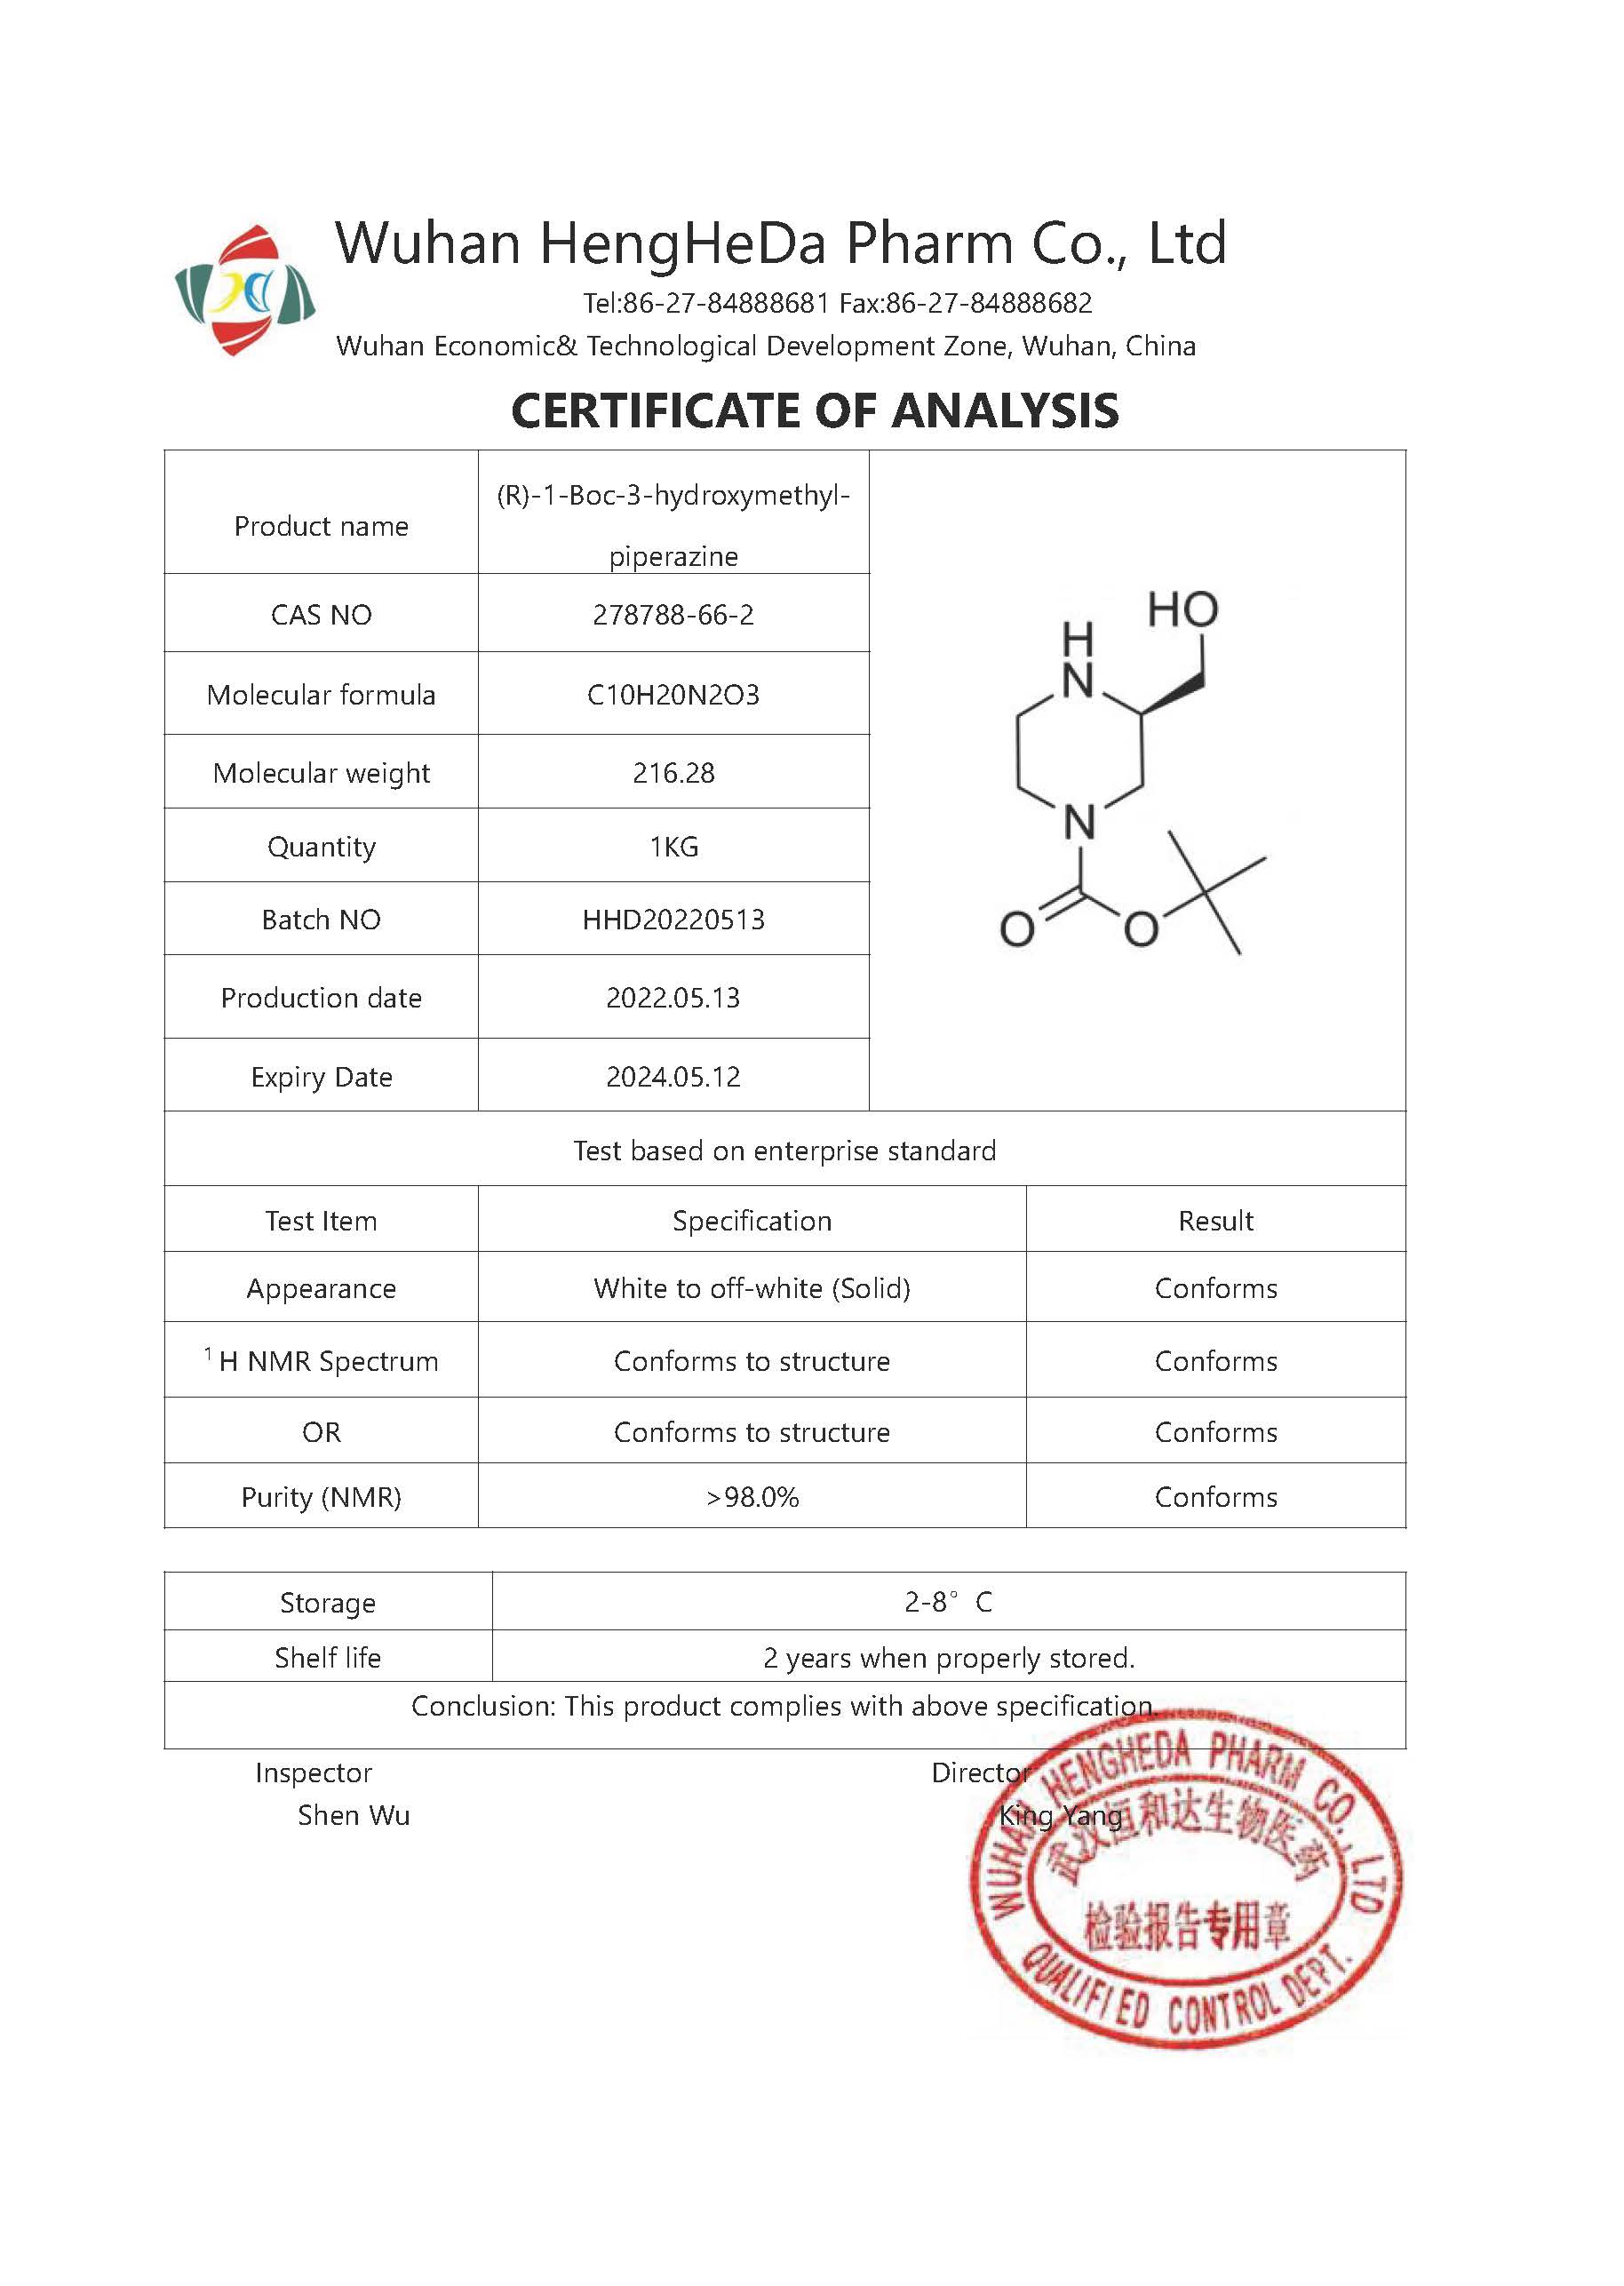 주문 (R)-4-N-Boc-2-HydroxyMethyl-piperazine CAS 278788-66-2,(R)-4-N-Boc-2-HydroxyMethyl-piperazine CAS 278788-66-2 가격,(R)-4-N-Boc-2-HydroxyMethyl-piperazine CAS 278788-66-2 브랜드,(R)-4-N-Boc-2-HydroxyMethyl-piperazine CAS 278788-66-2 제조업체,(R)-4-N-Boc-2-HydroxyMethyl-piperazine CAS 278788-66-2 인용,(R)-4-N-Boc-2-HydroxyMethyl-piperazine CAS 278788-66-2 회사,